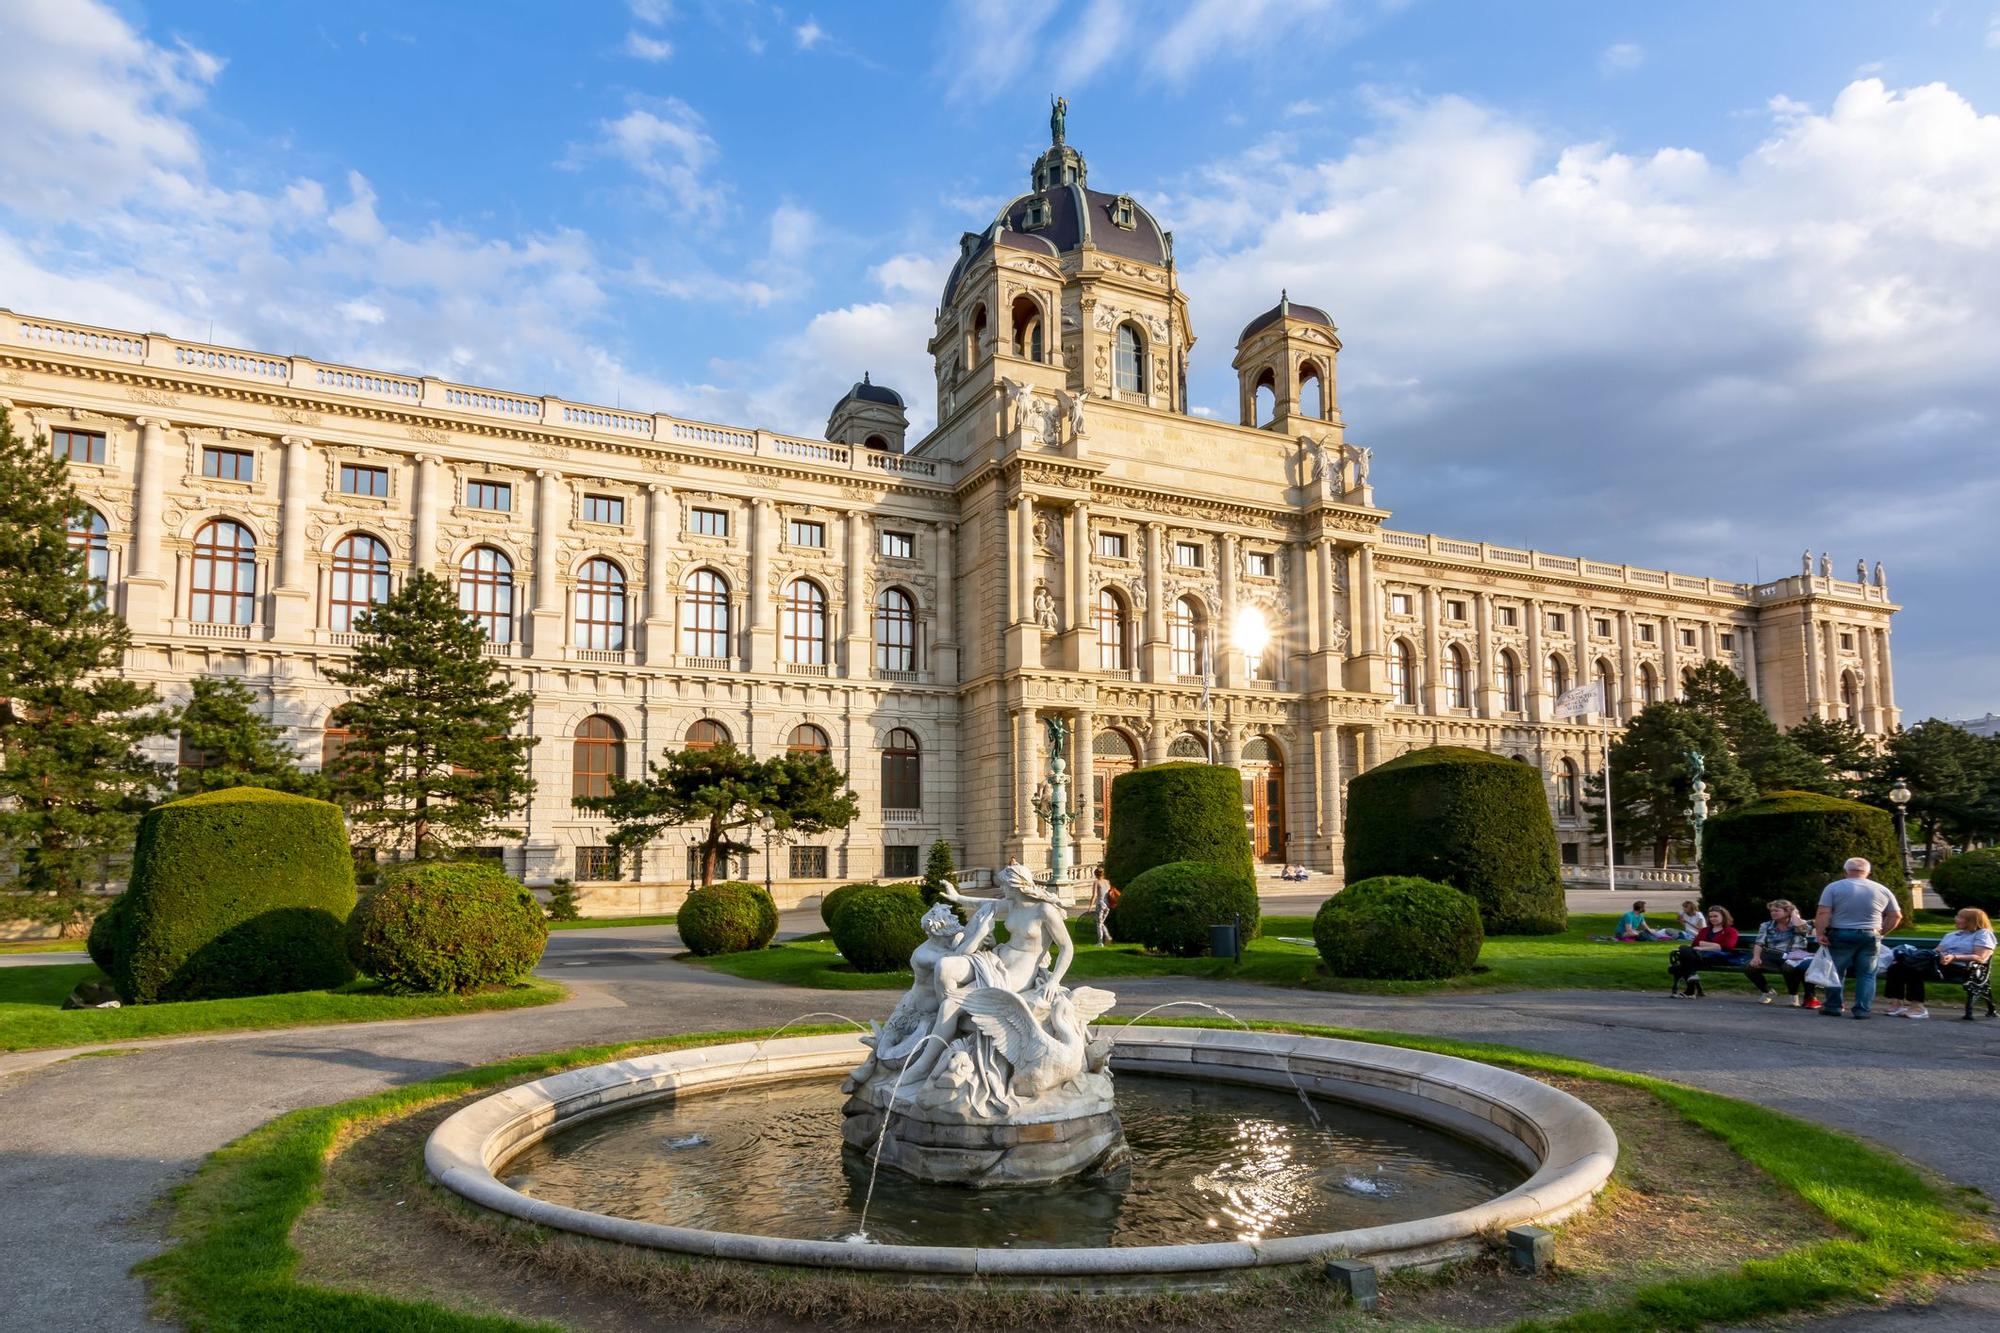 El Kunsthistorisches Museum Wien todos los meses organiza un evento que combina lo mejor del artel la música y la fiesta